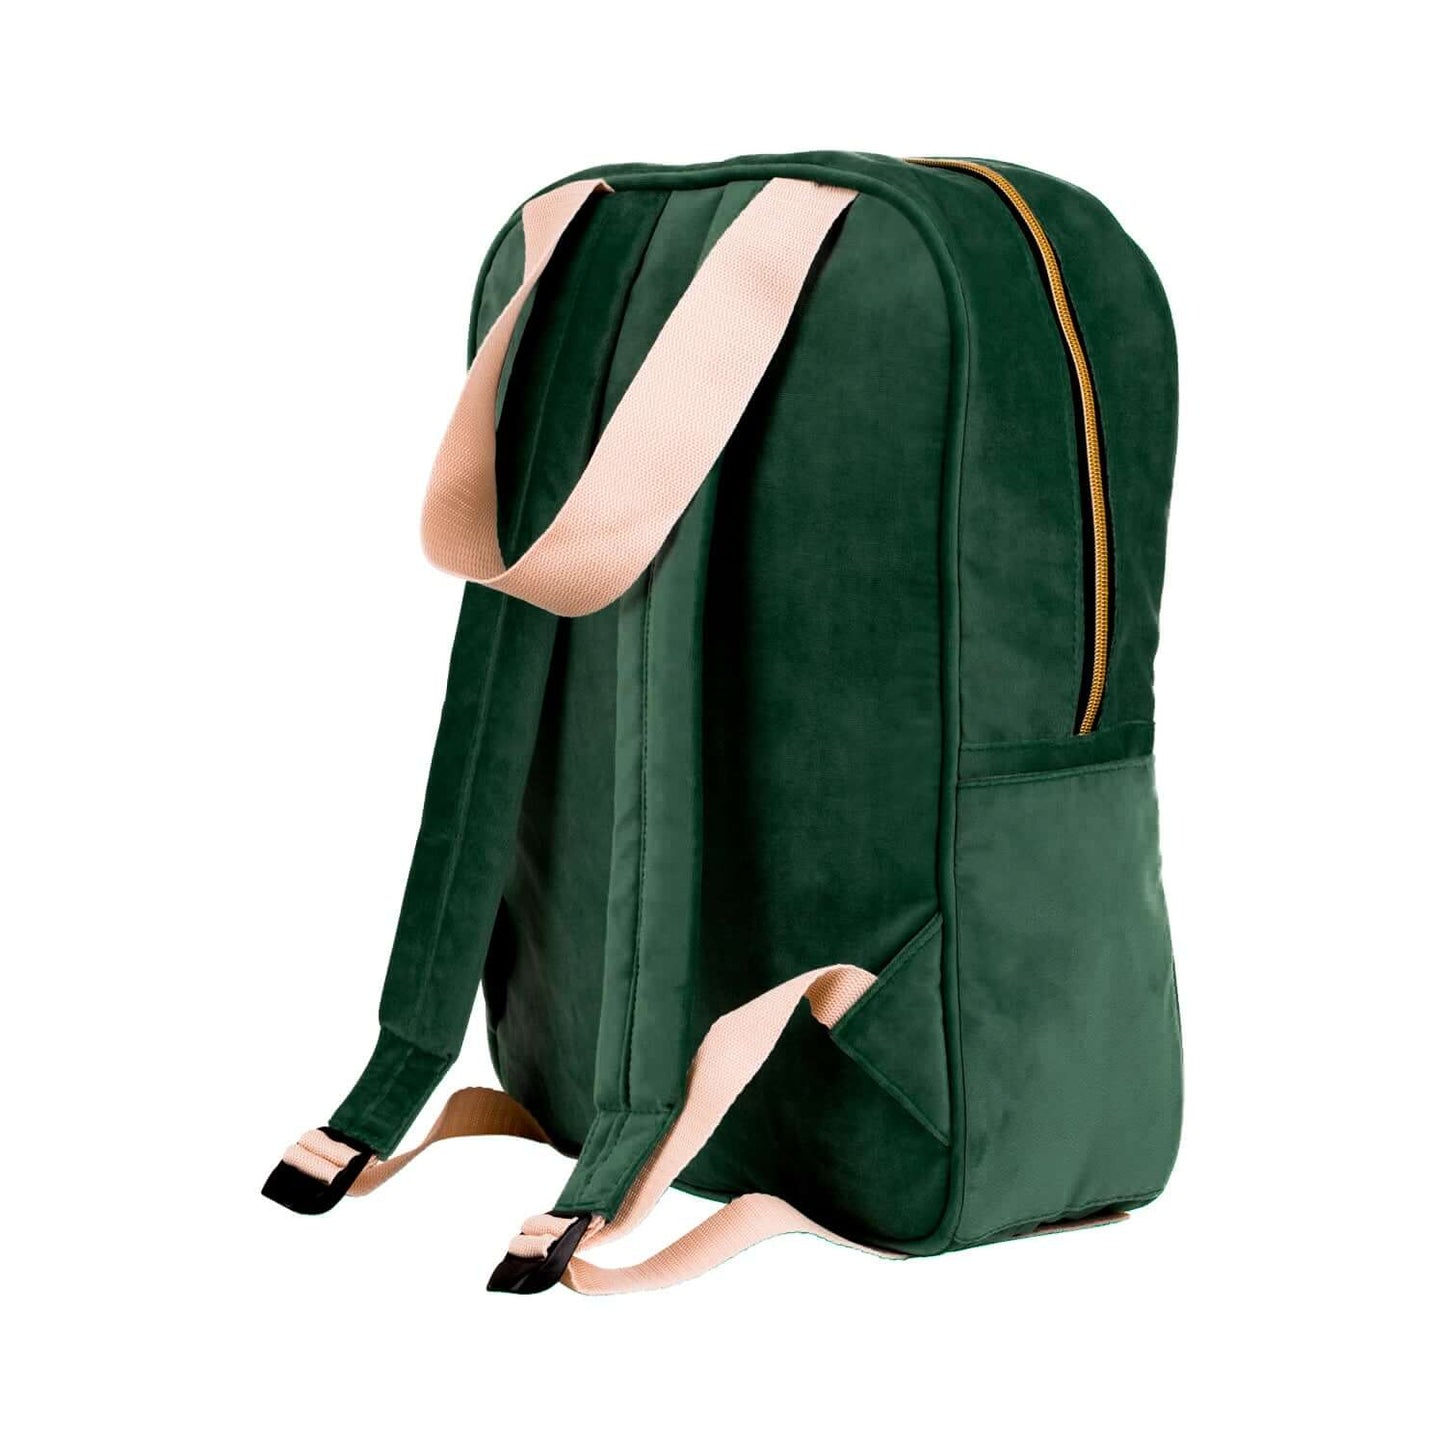 Duży plecak welurowy zielony od Bettys Home tył, elegancki plecak na laptopa damski, pojemny plecak do samolotu